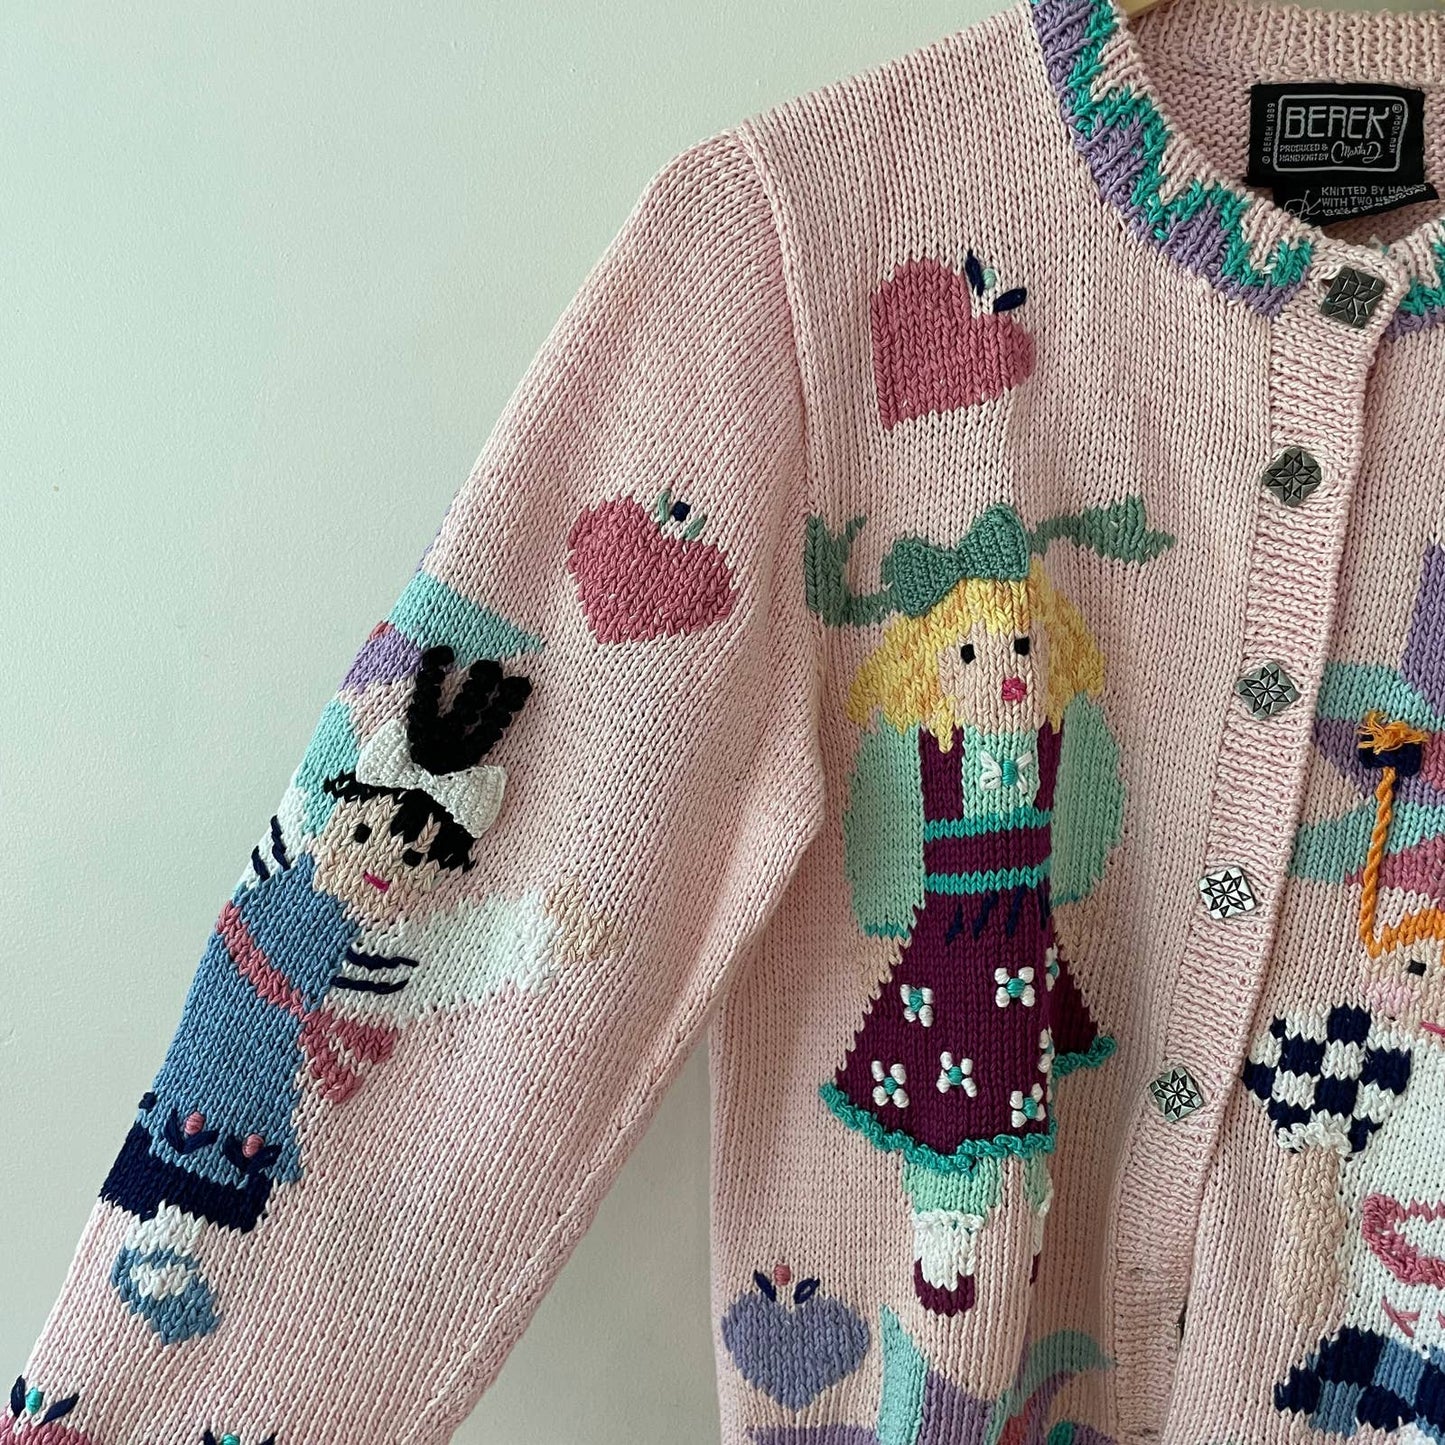 Berek Hand Knit Vintage Girl Pattern Cardigan Sweater